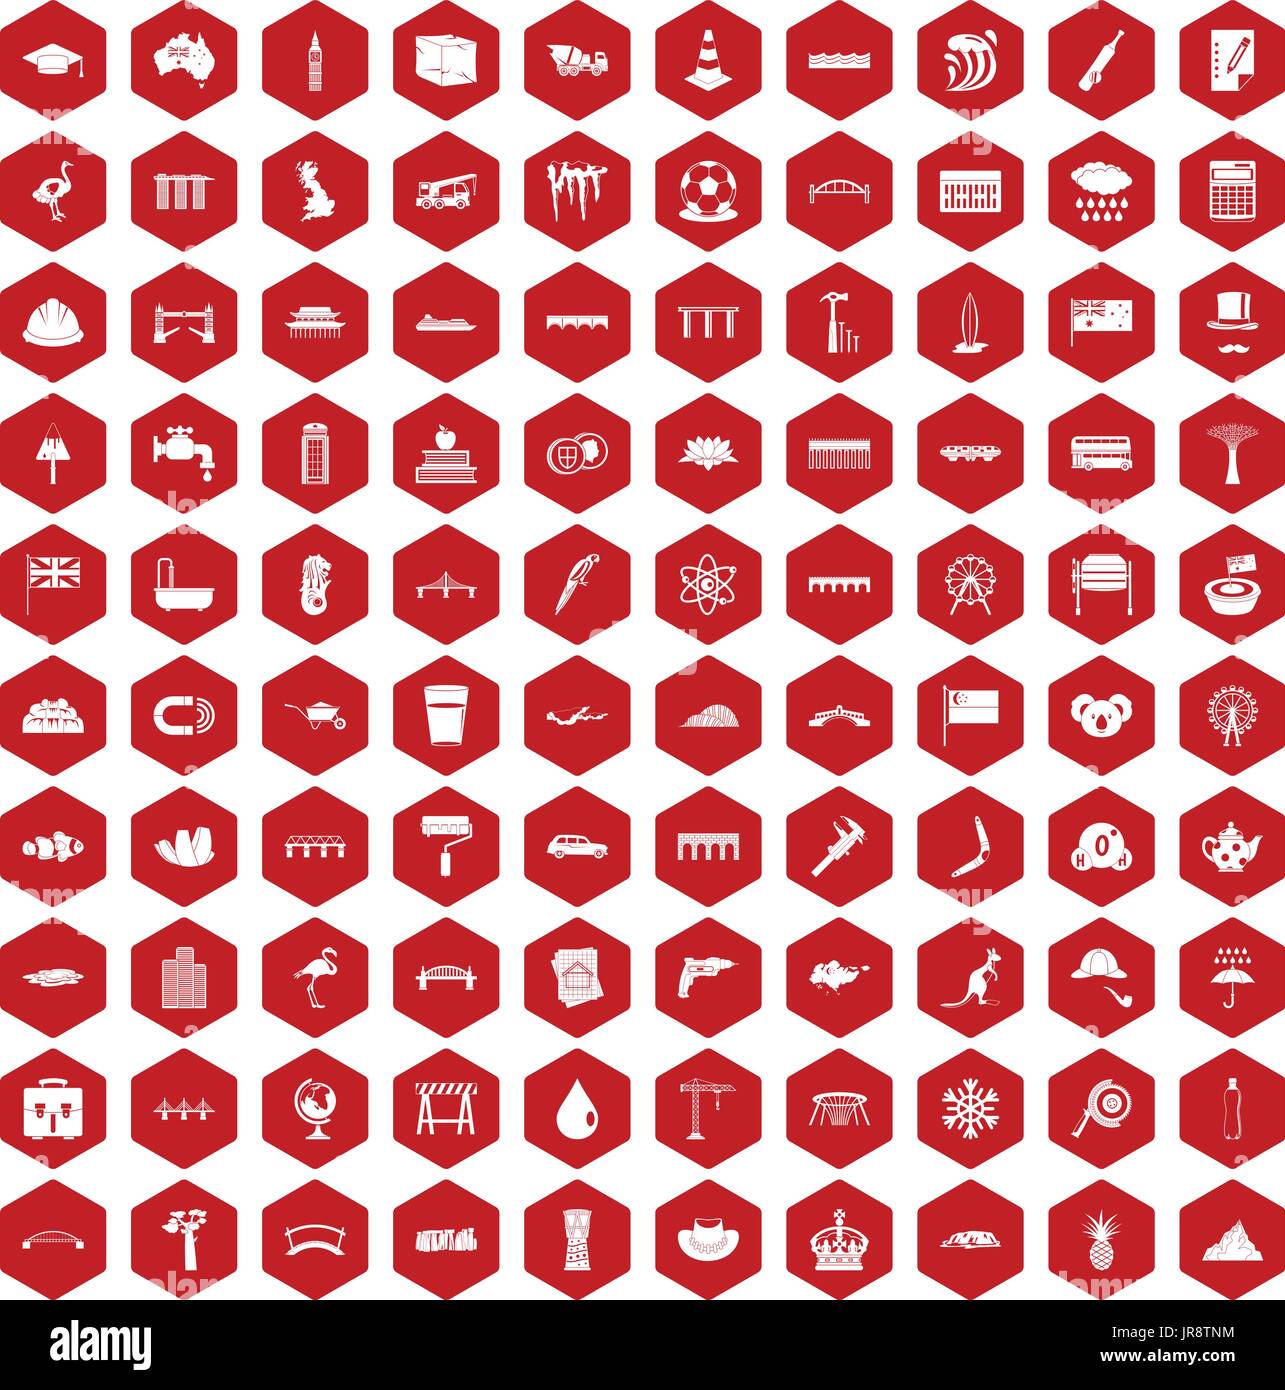 100 bridge icons hexagon red Stock Vector